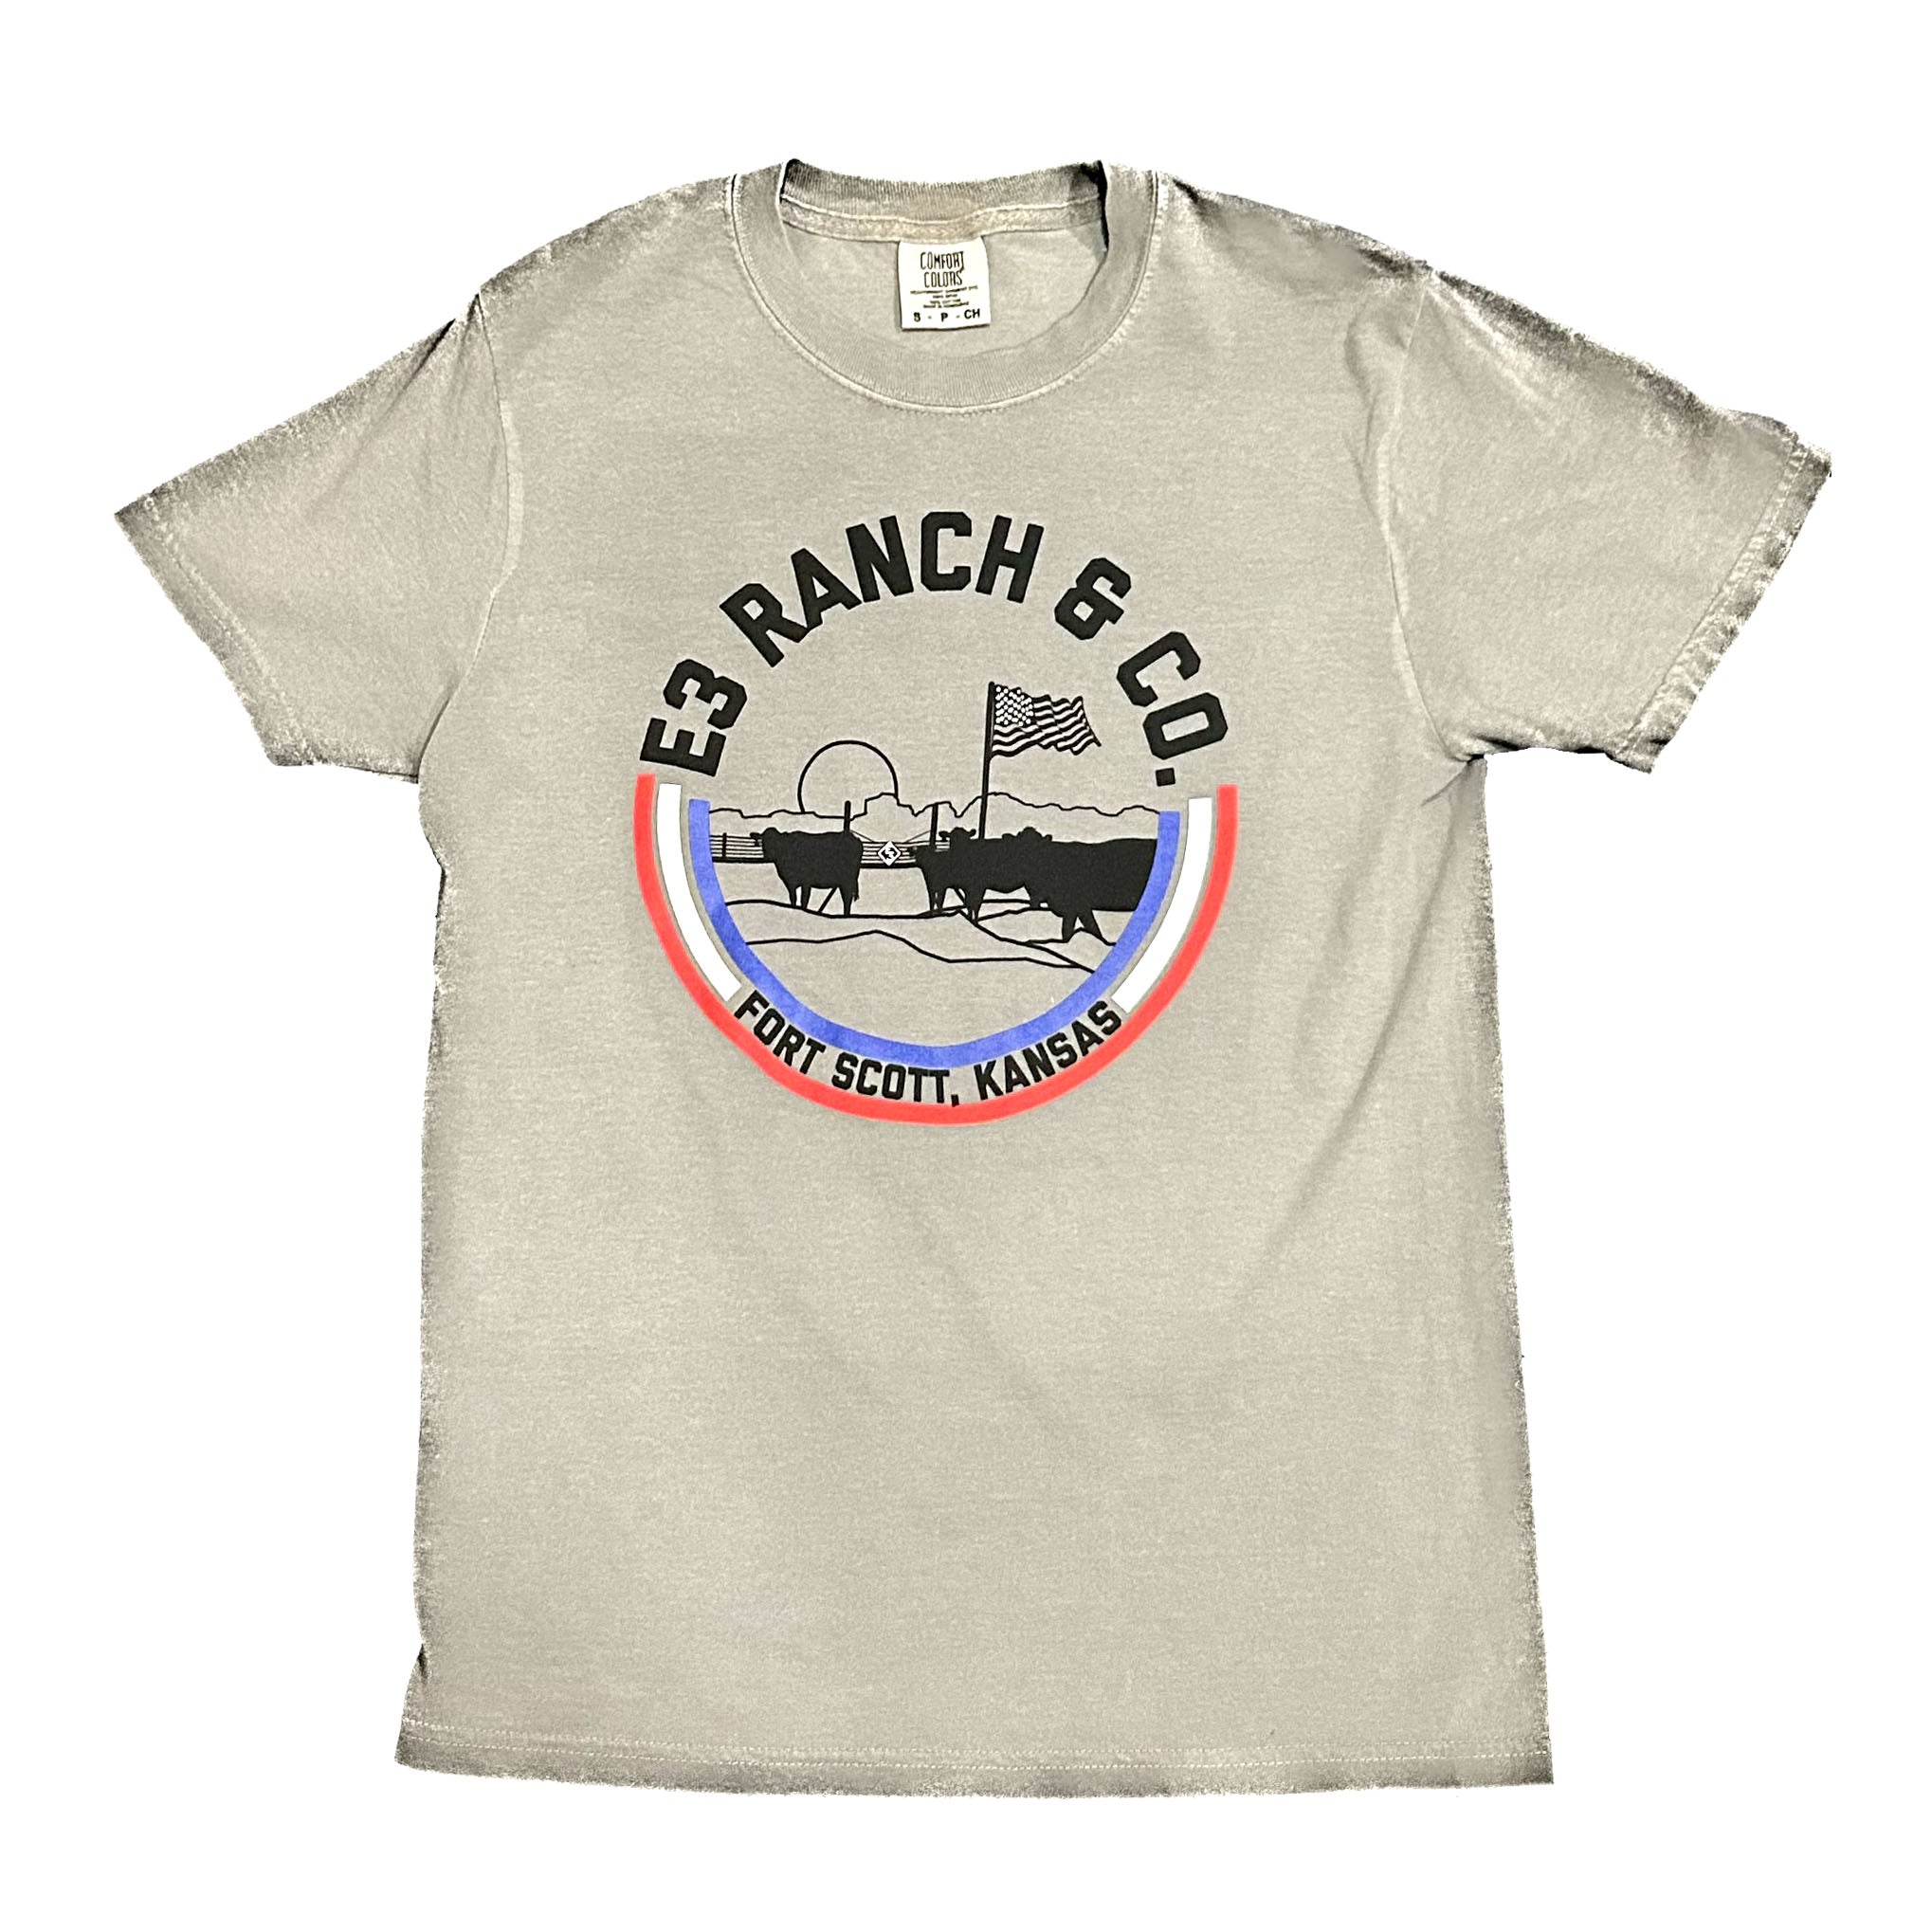 E3 Ranch & Co Shirt